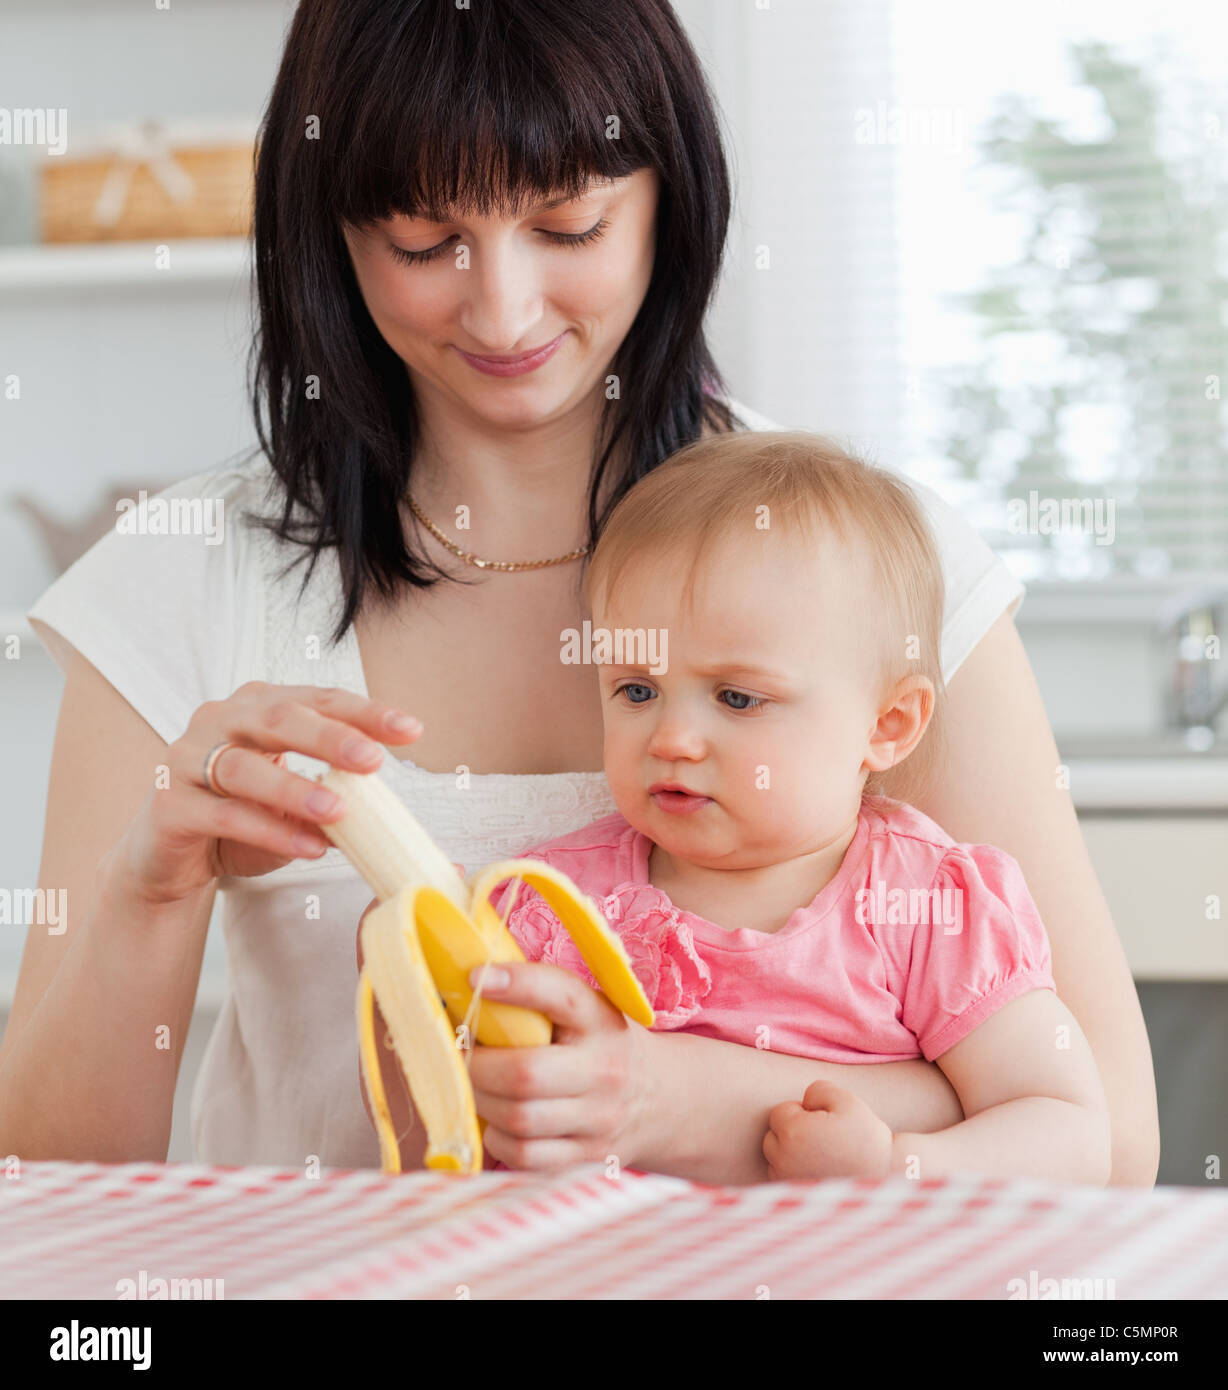 Charmante Brünette Frau eine Banane schälen, halten Sie ihr baby Stockfoto